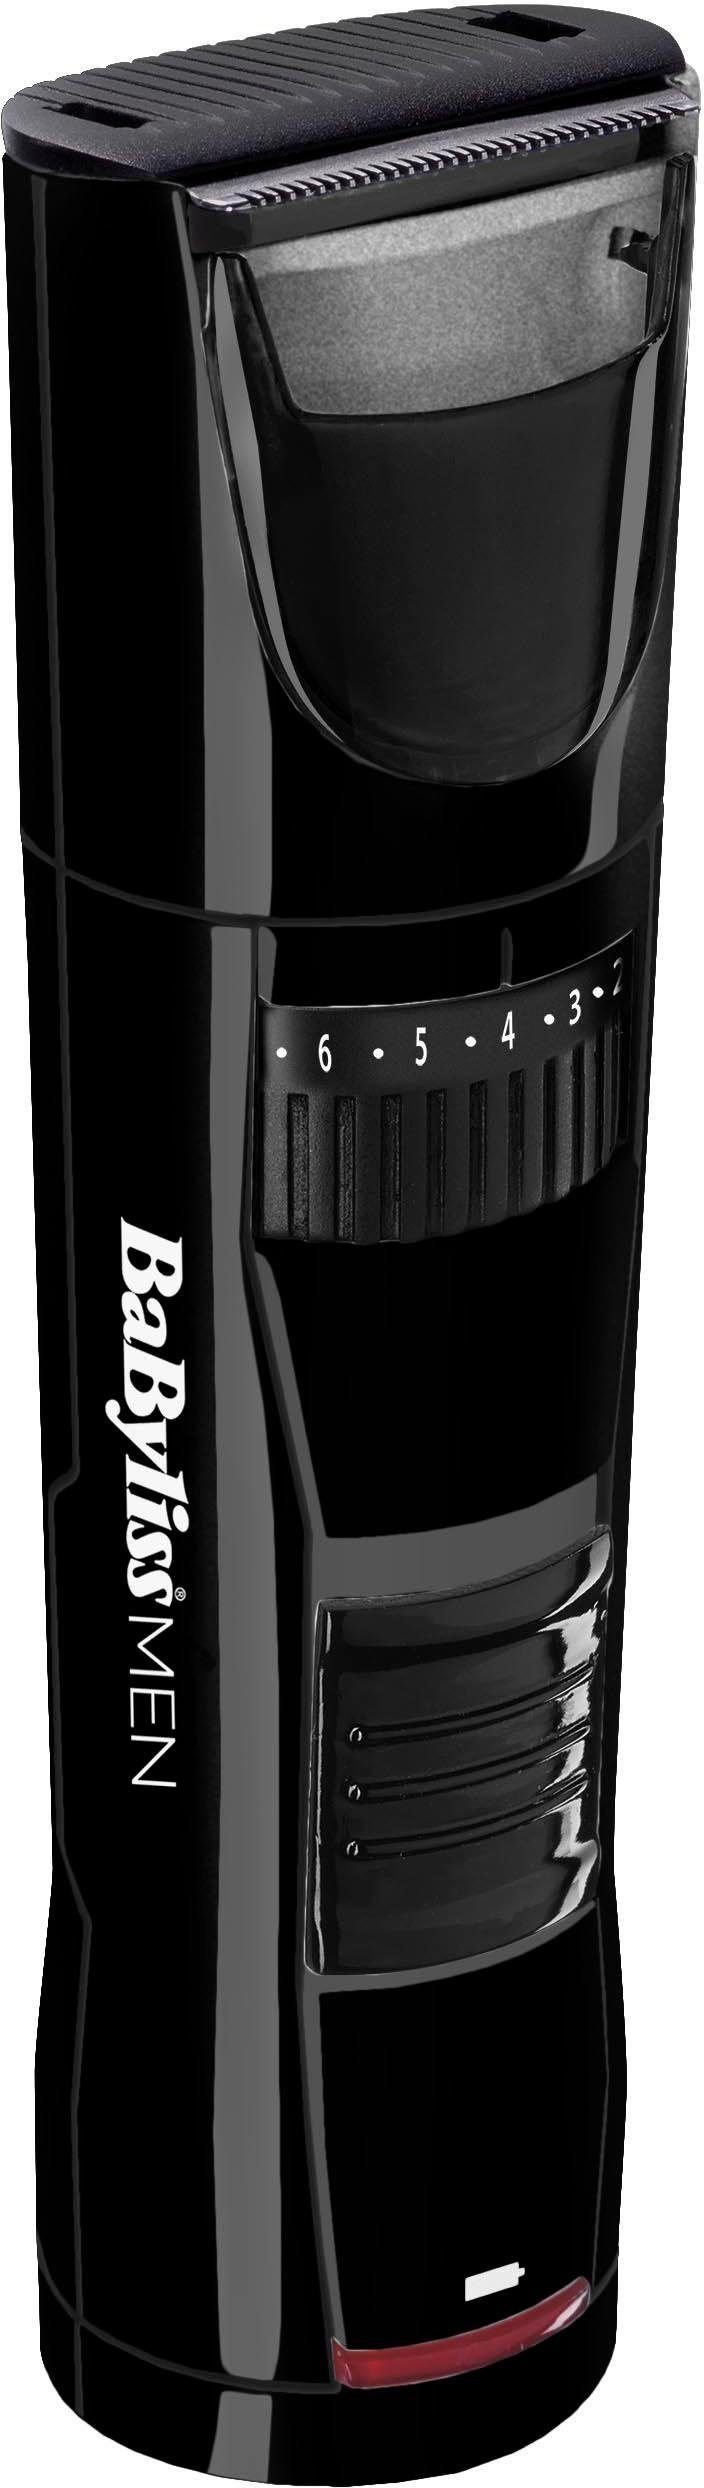 BaByliss Bartschneider T811E MEN Beard Trim, mit Stoppel-Sammler,  Gleichmäßiges, geradliniges Trimmen mit 40 Längeneinstellungen: 1mm-20mm